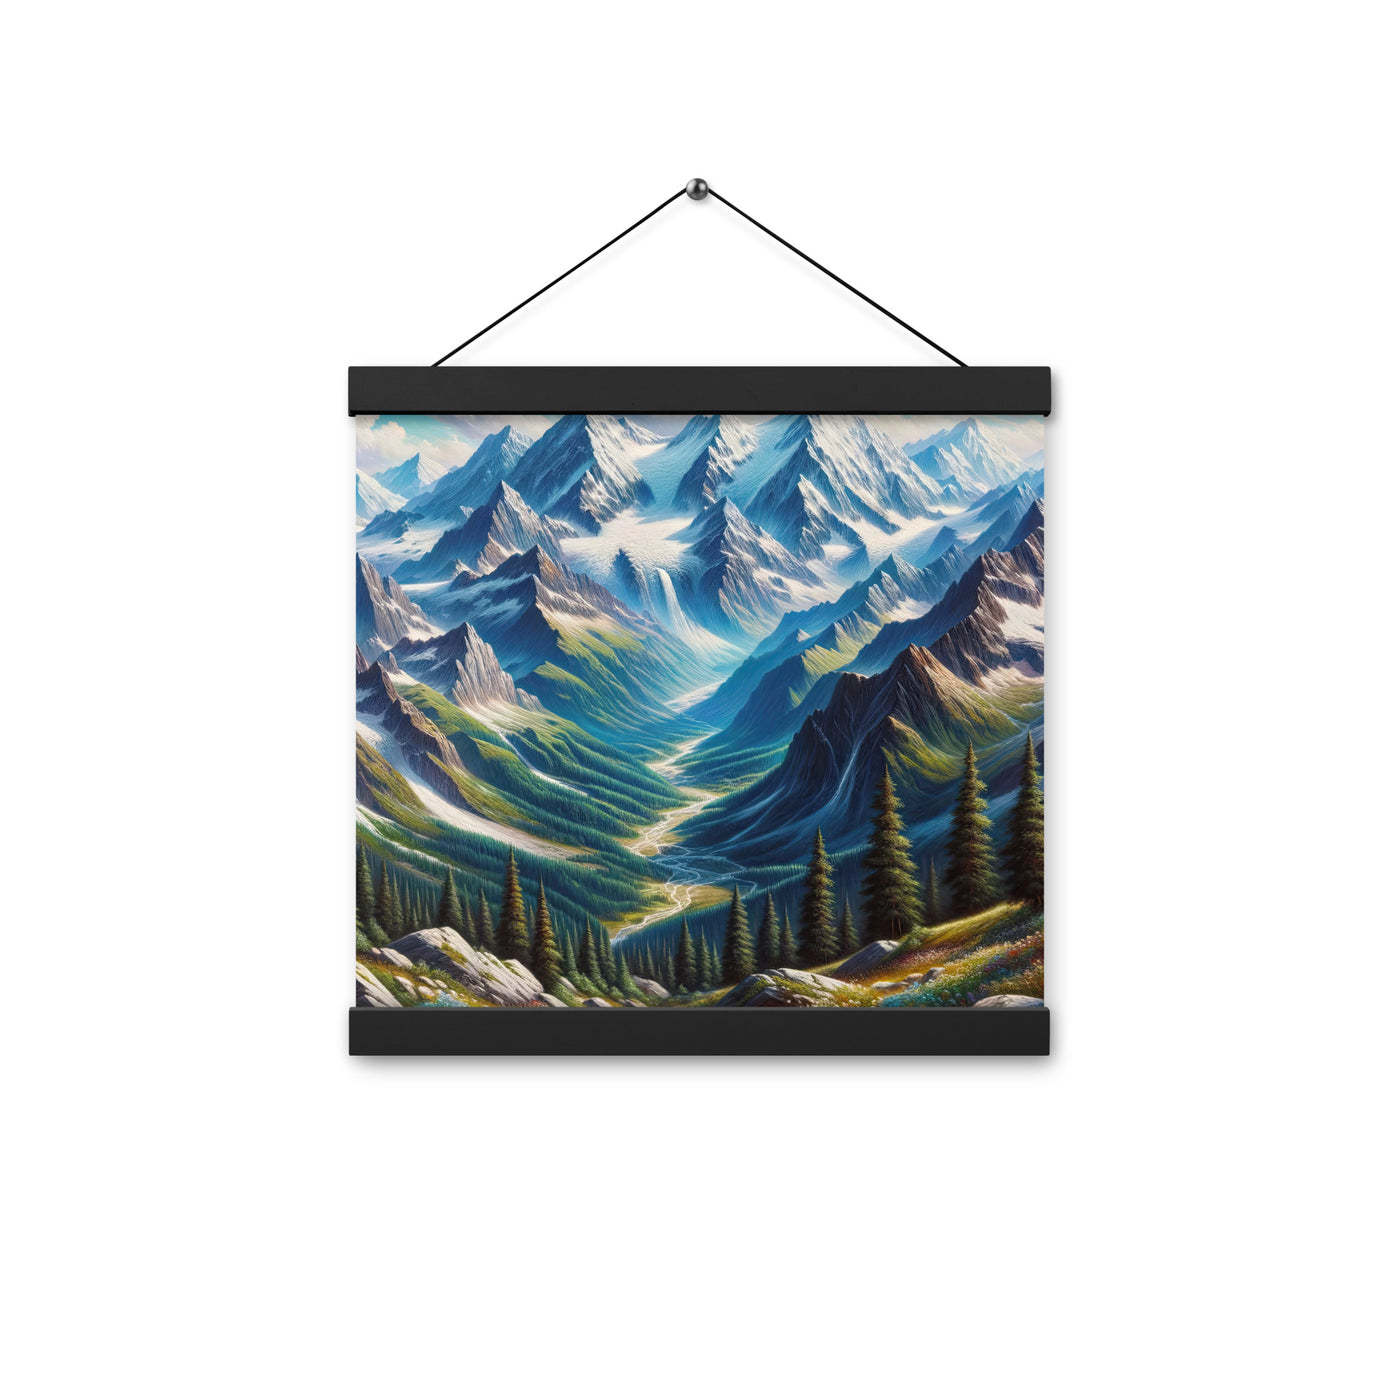 Panorama-Ölgemälde der Alpen mit schneebedeckten Gipfeln und schlängelnden Flusstälern - Premium Poster mit Aufhängung berge xxx yyy zzz 30.5 x 30.5 cm